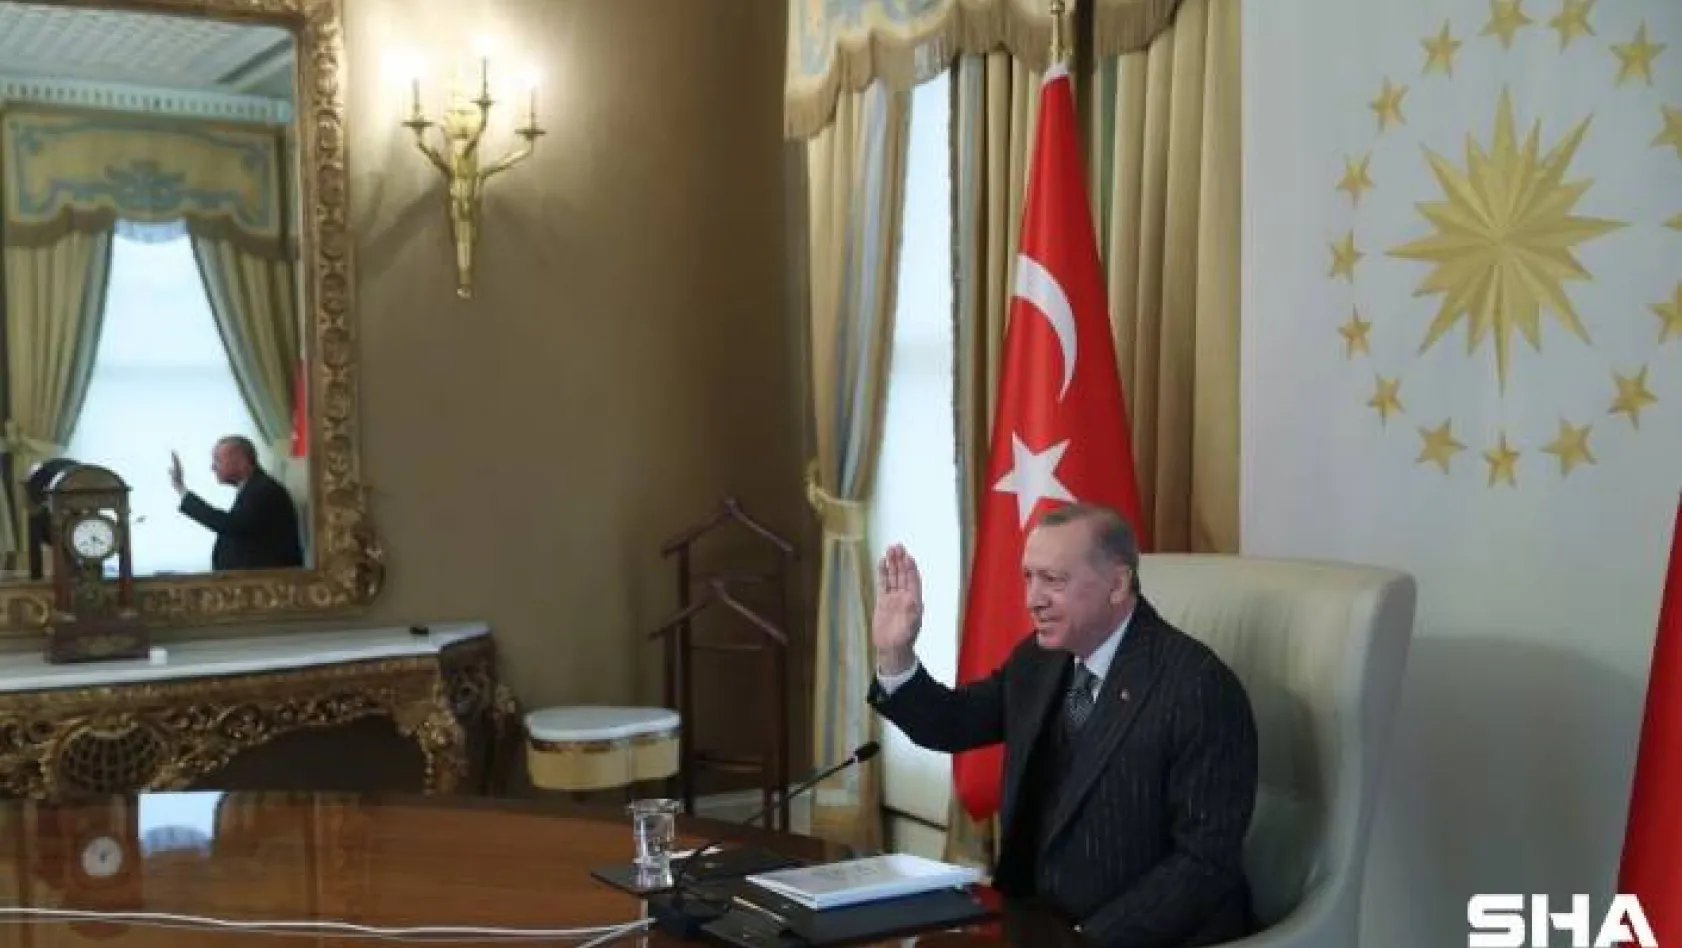 Cumhurbaşkanı Erdoğan'dan kritik AB zirvesi öncesi önemli görüşme